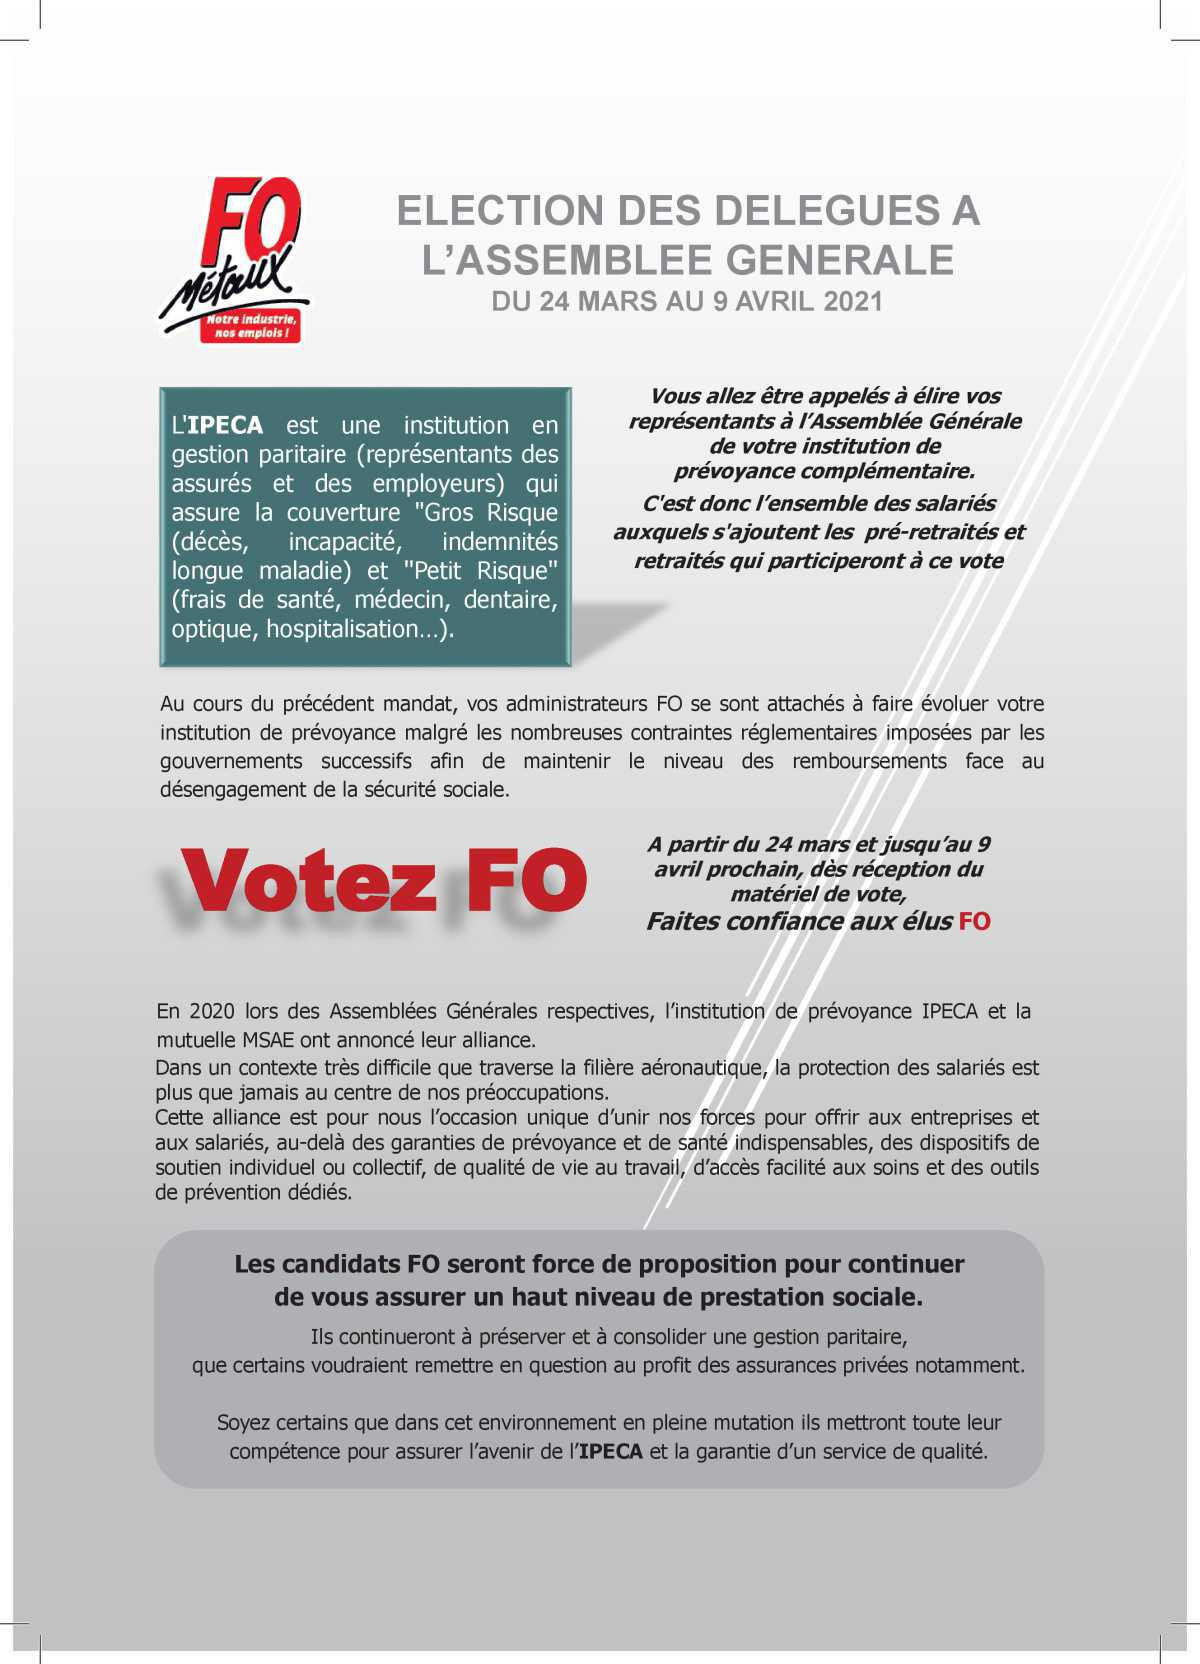 IPECA : Elections des Délégués à l'assemblée Générale du 24 mars au 9 avril 2021